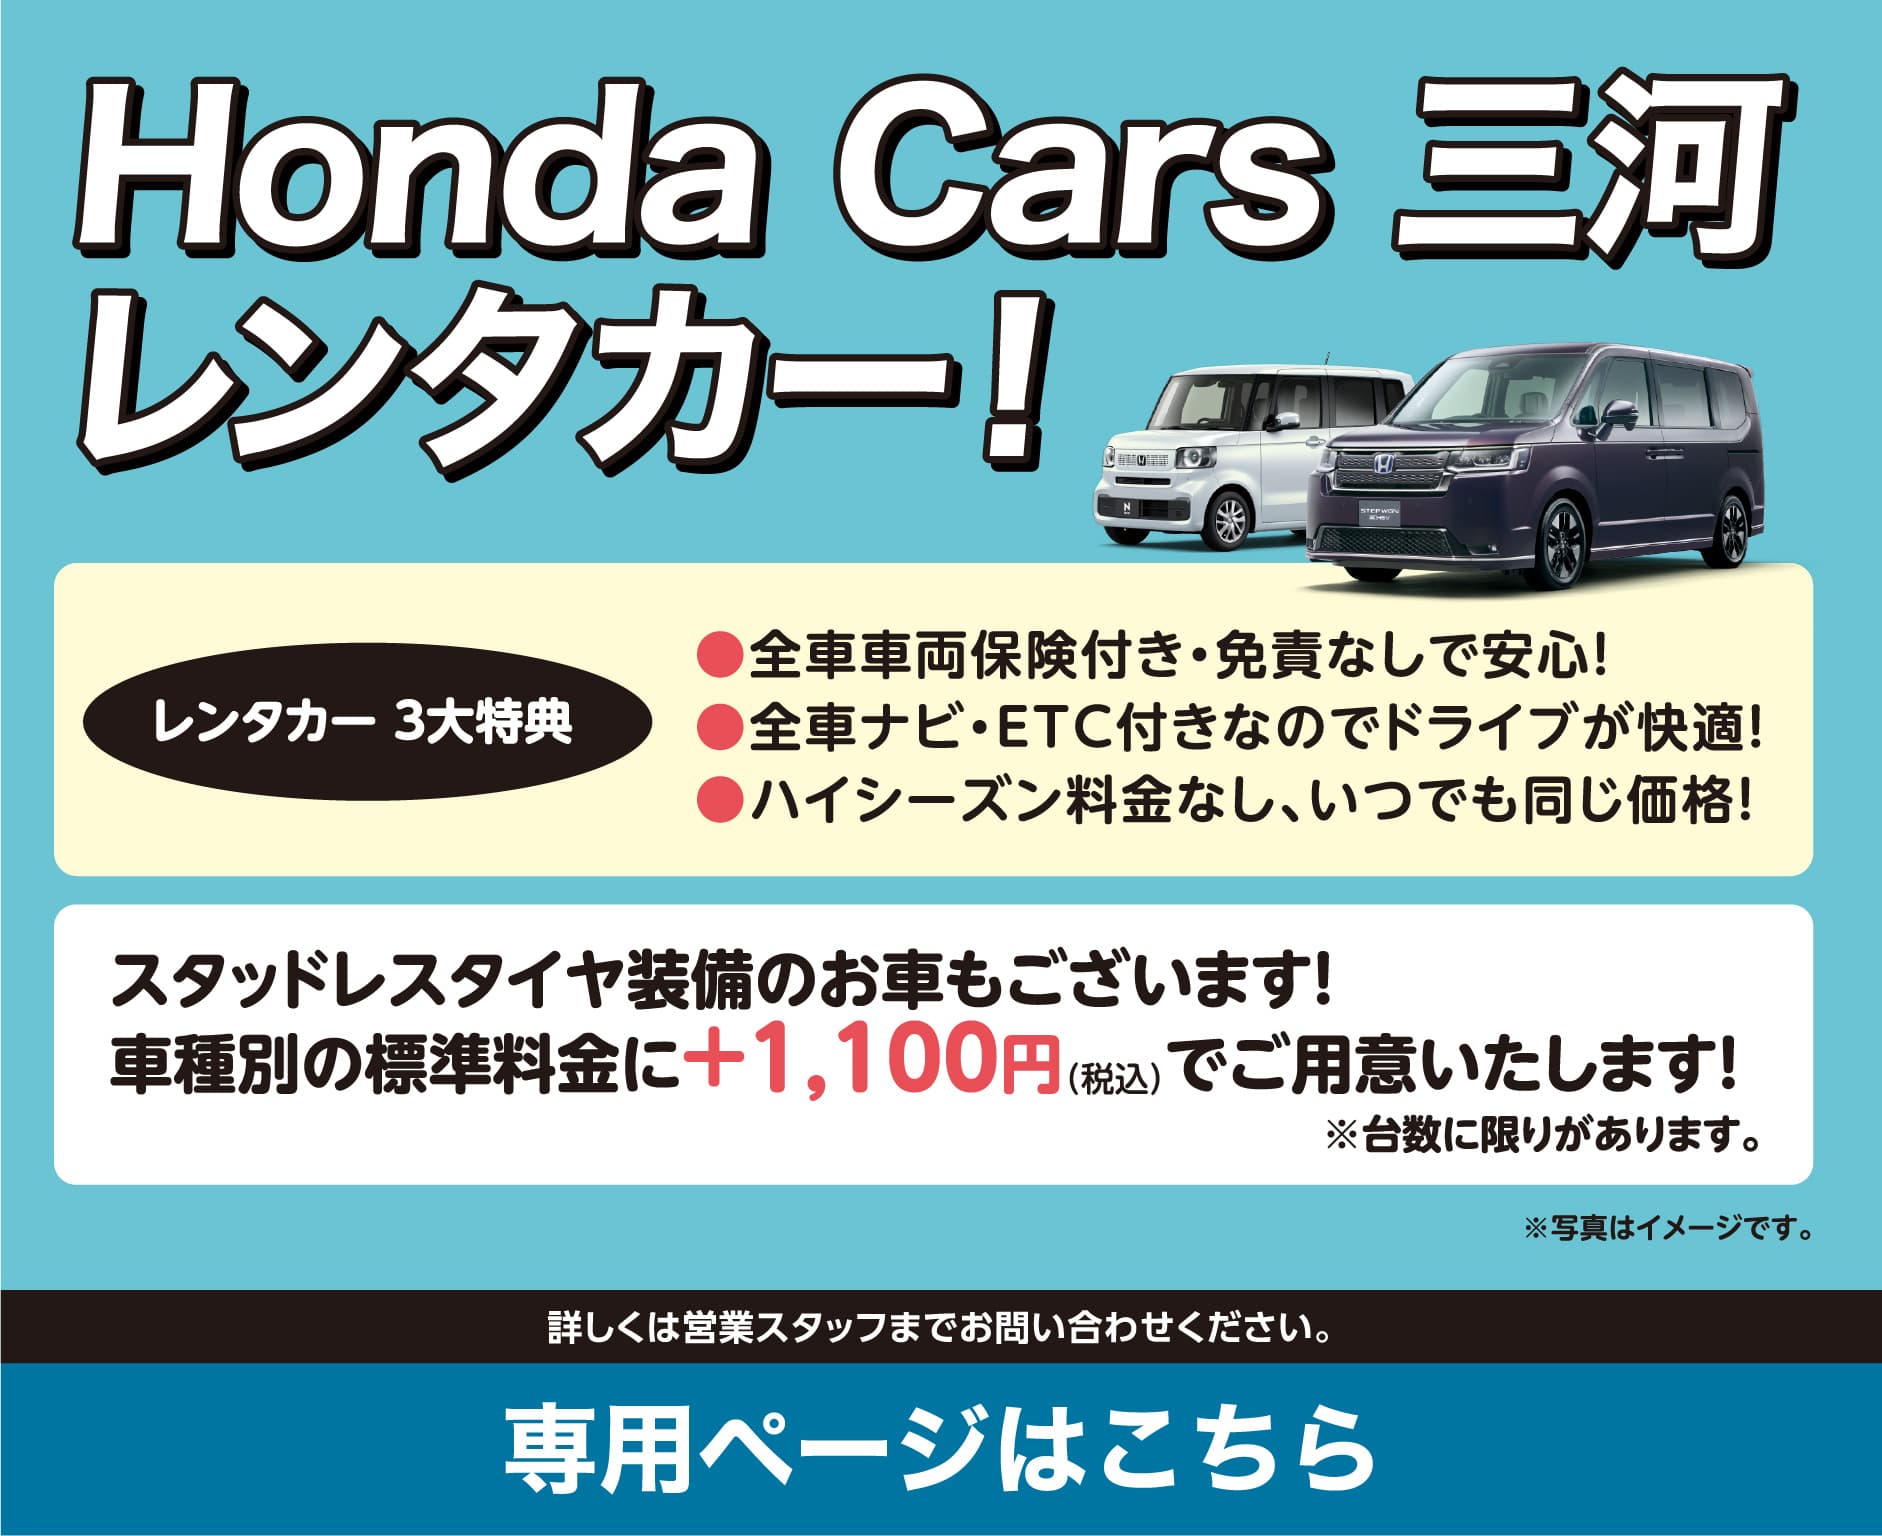 Honda Cars 三河レンタカー